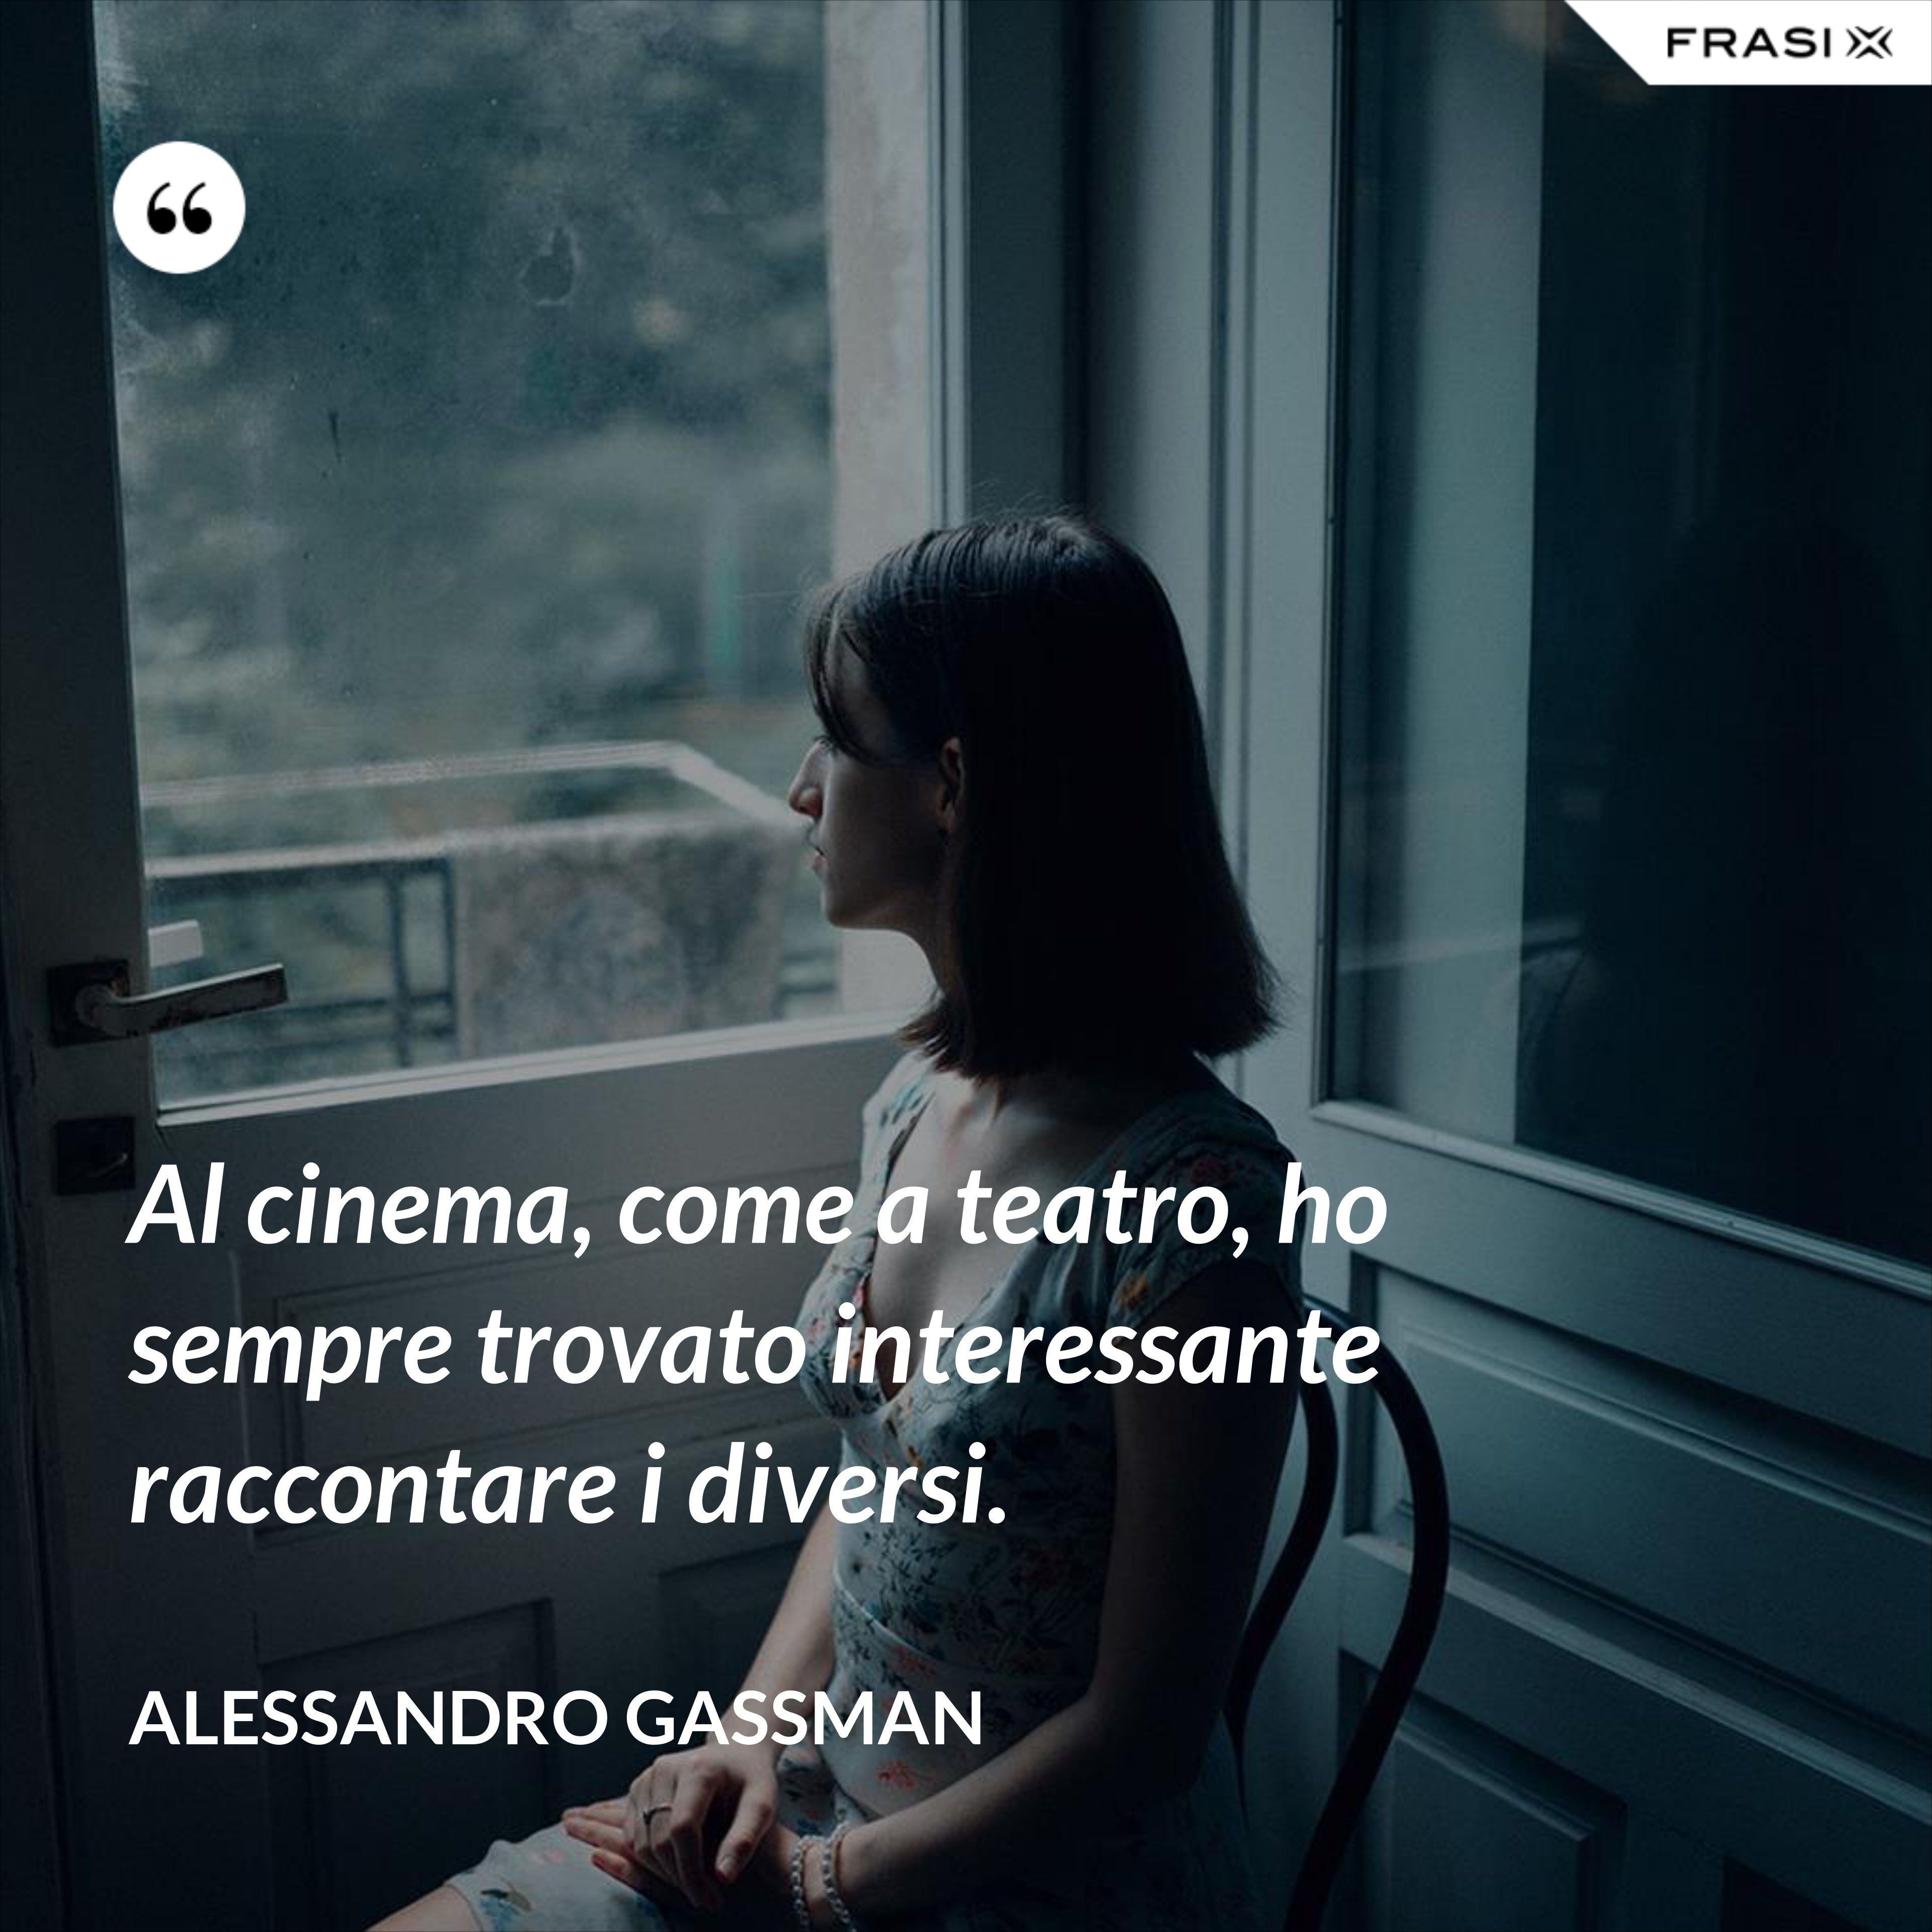 Al cinema, come a teatro, ho sempre trovato interessante raccontare i diversi. - Alessandro Gassman